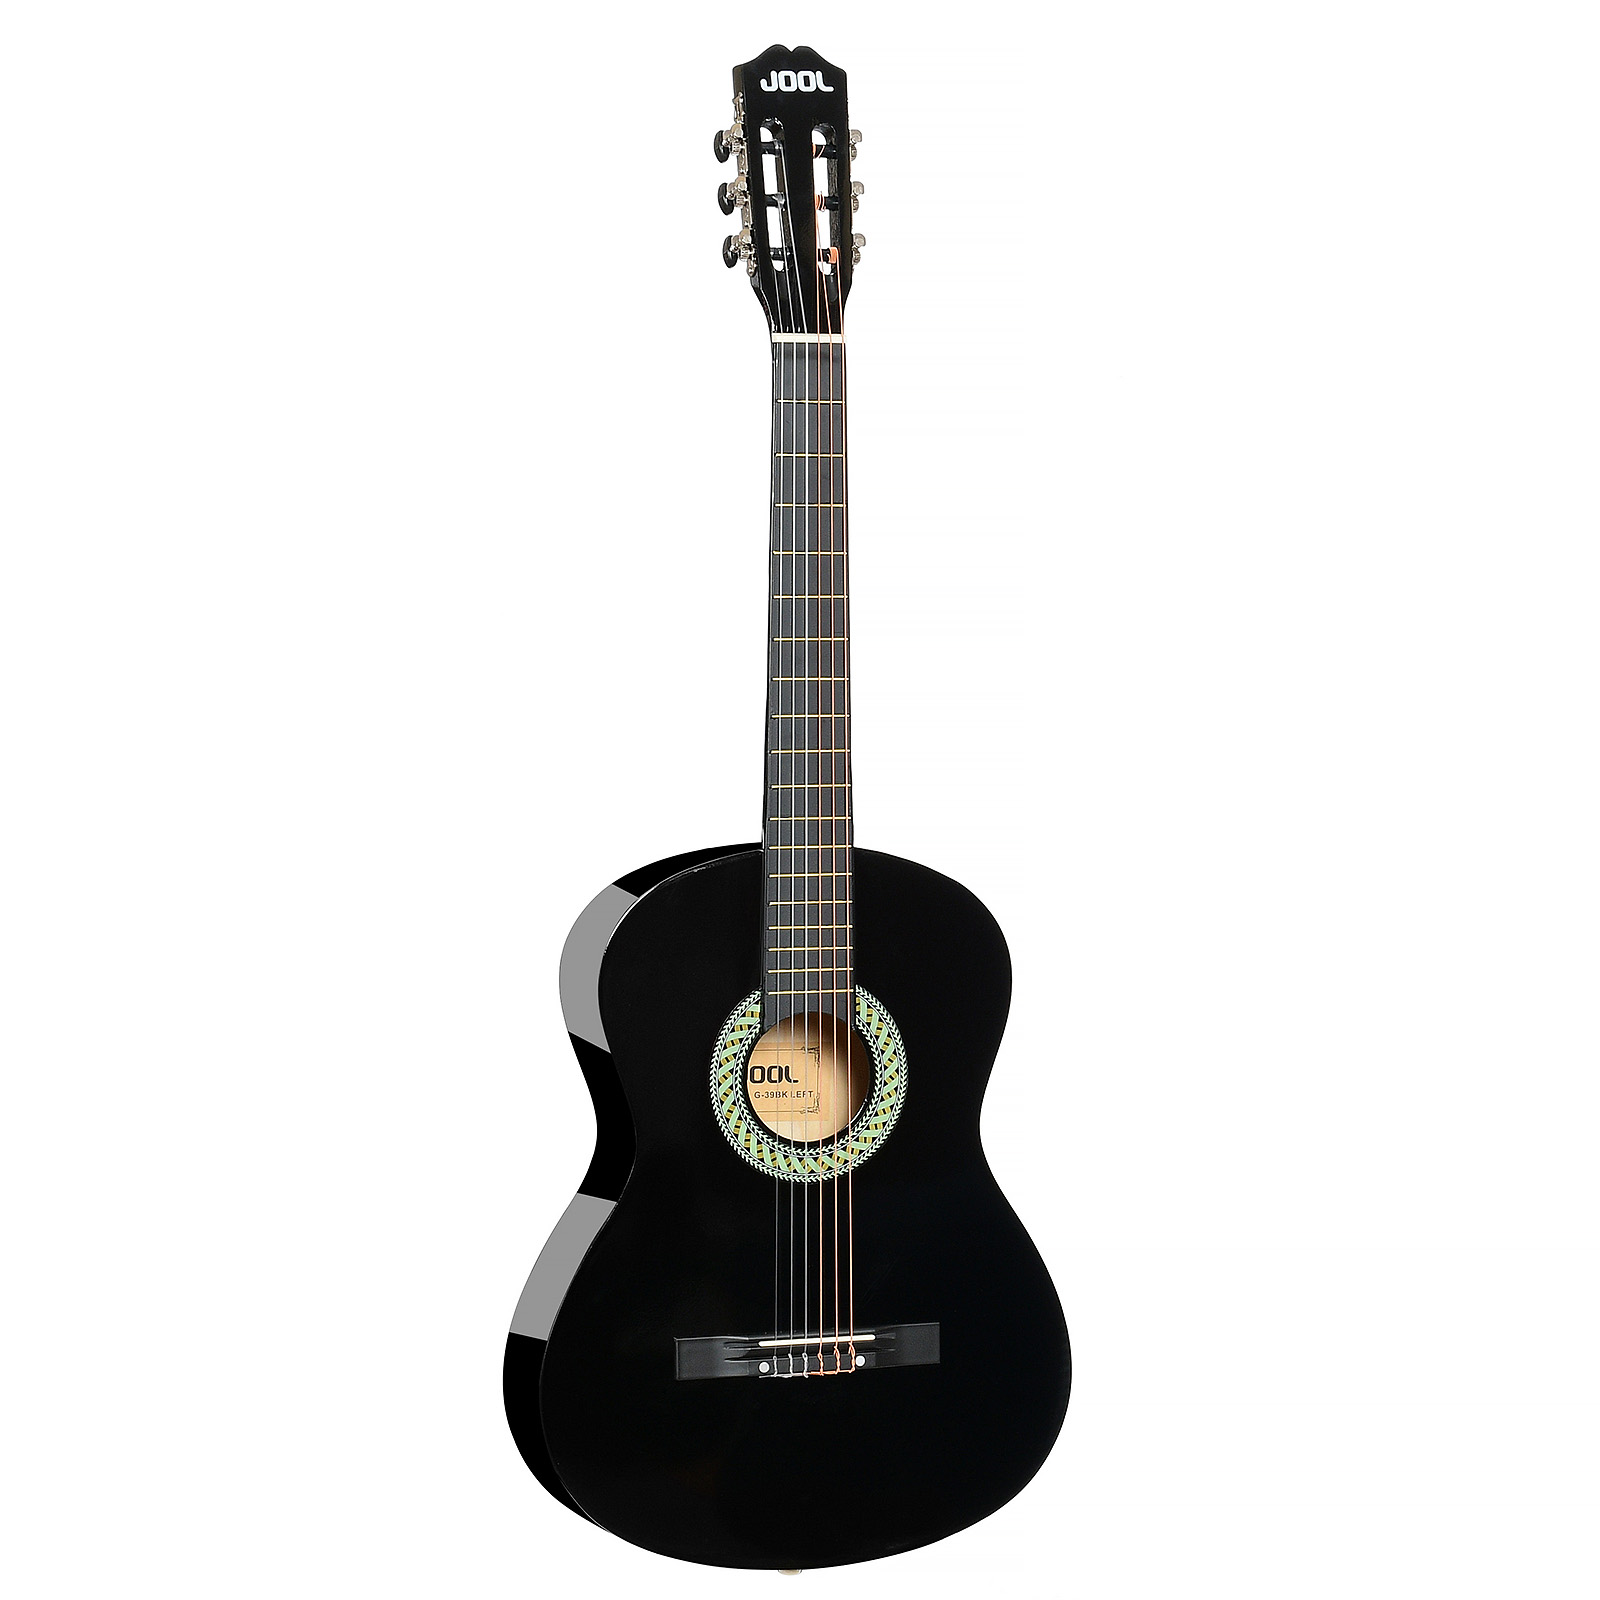 Jool G-39 Bk 4/4 Left - Леворукая классическая гитара, цвет черный